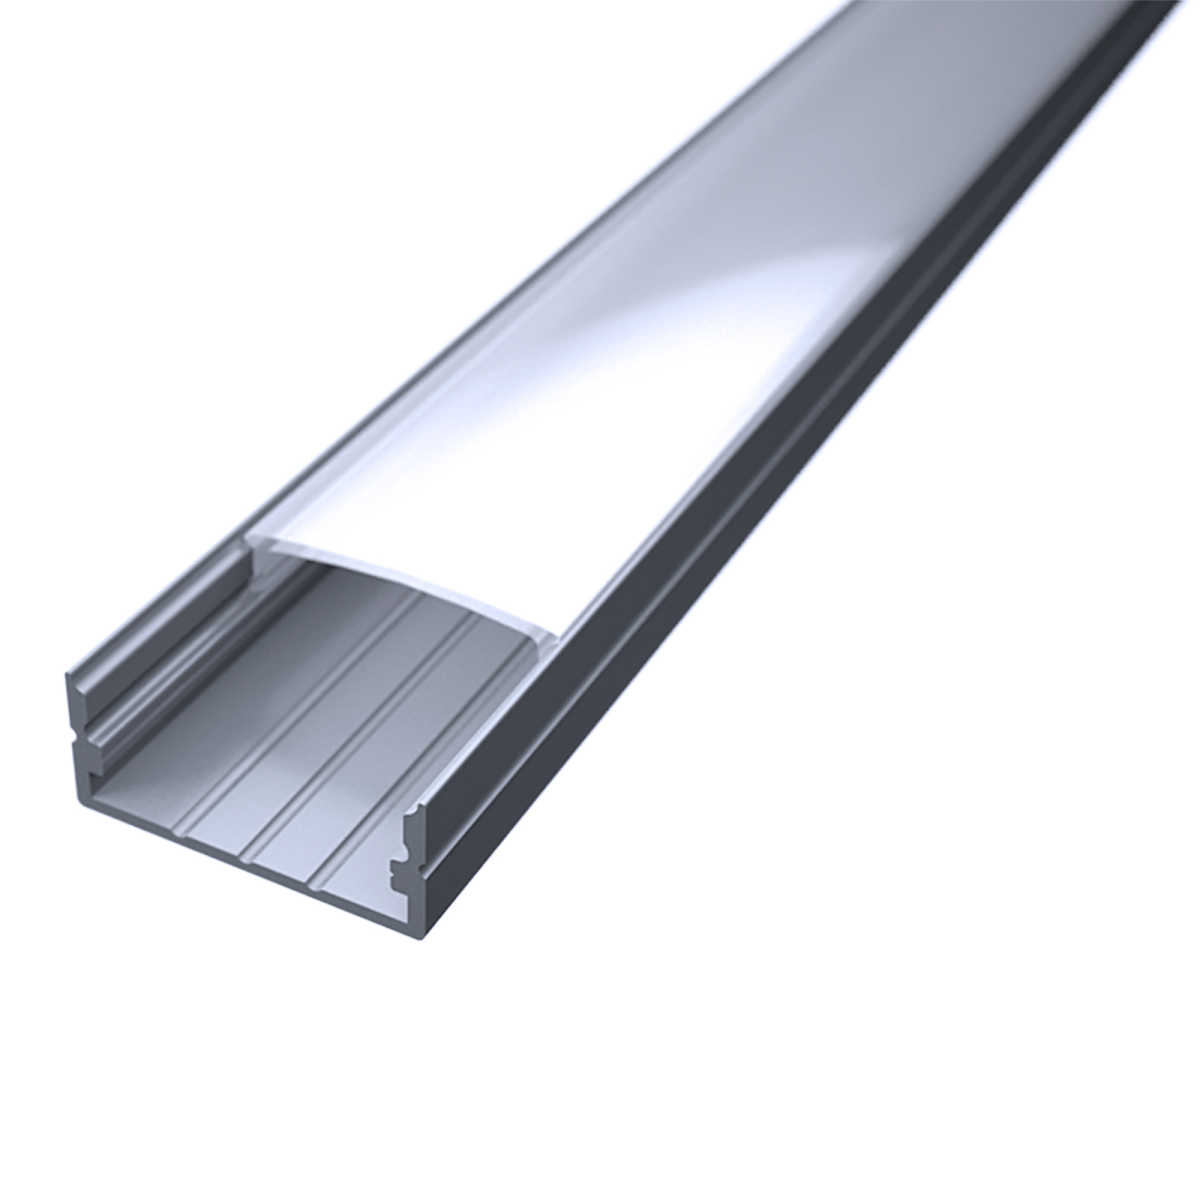 LED Flachprofil "Slim-Line max" | Abdeckung diffus | Zuschnitt auf 5cm |